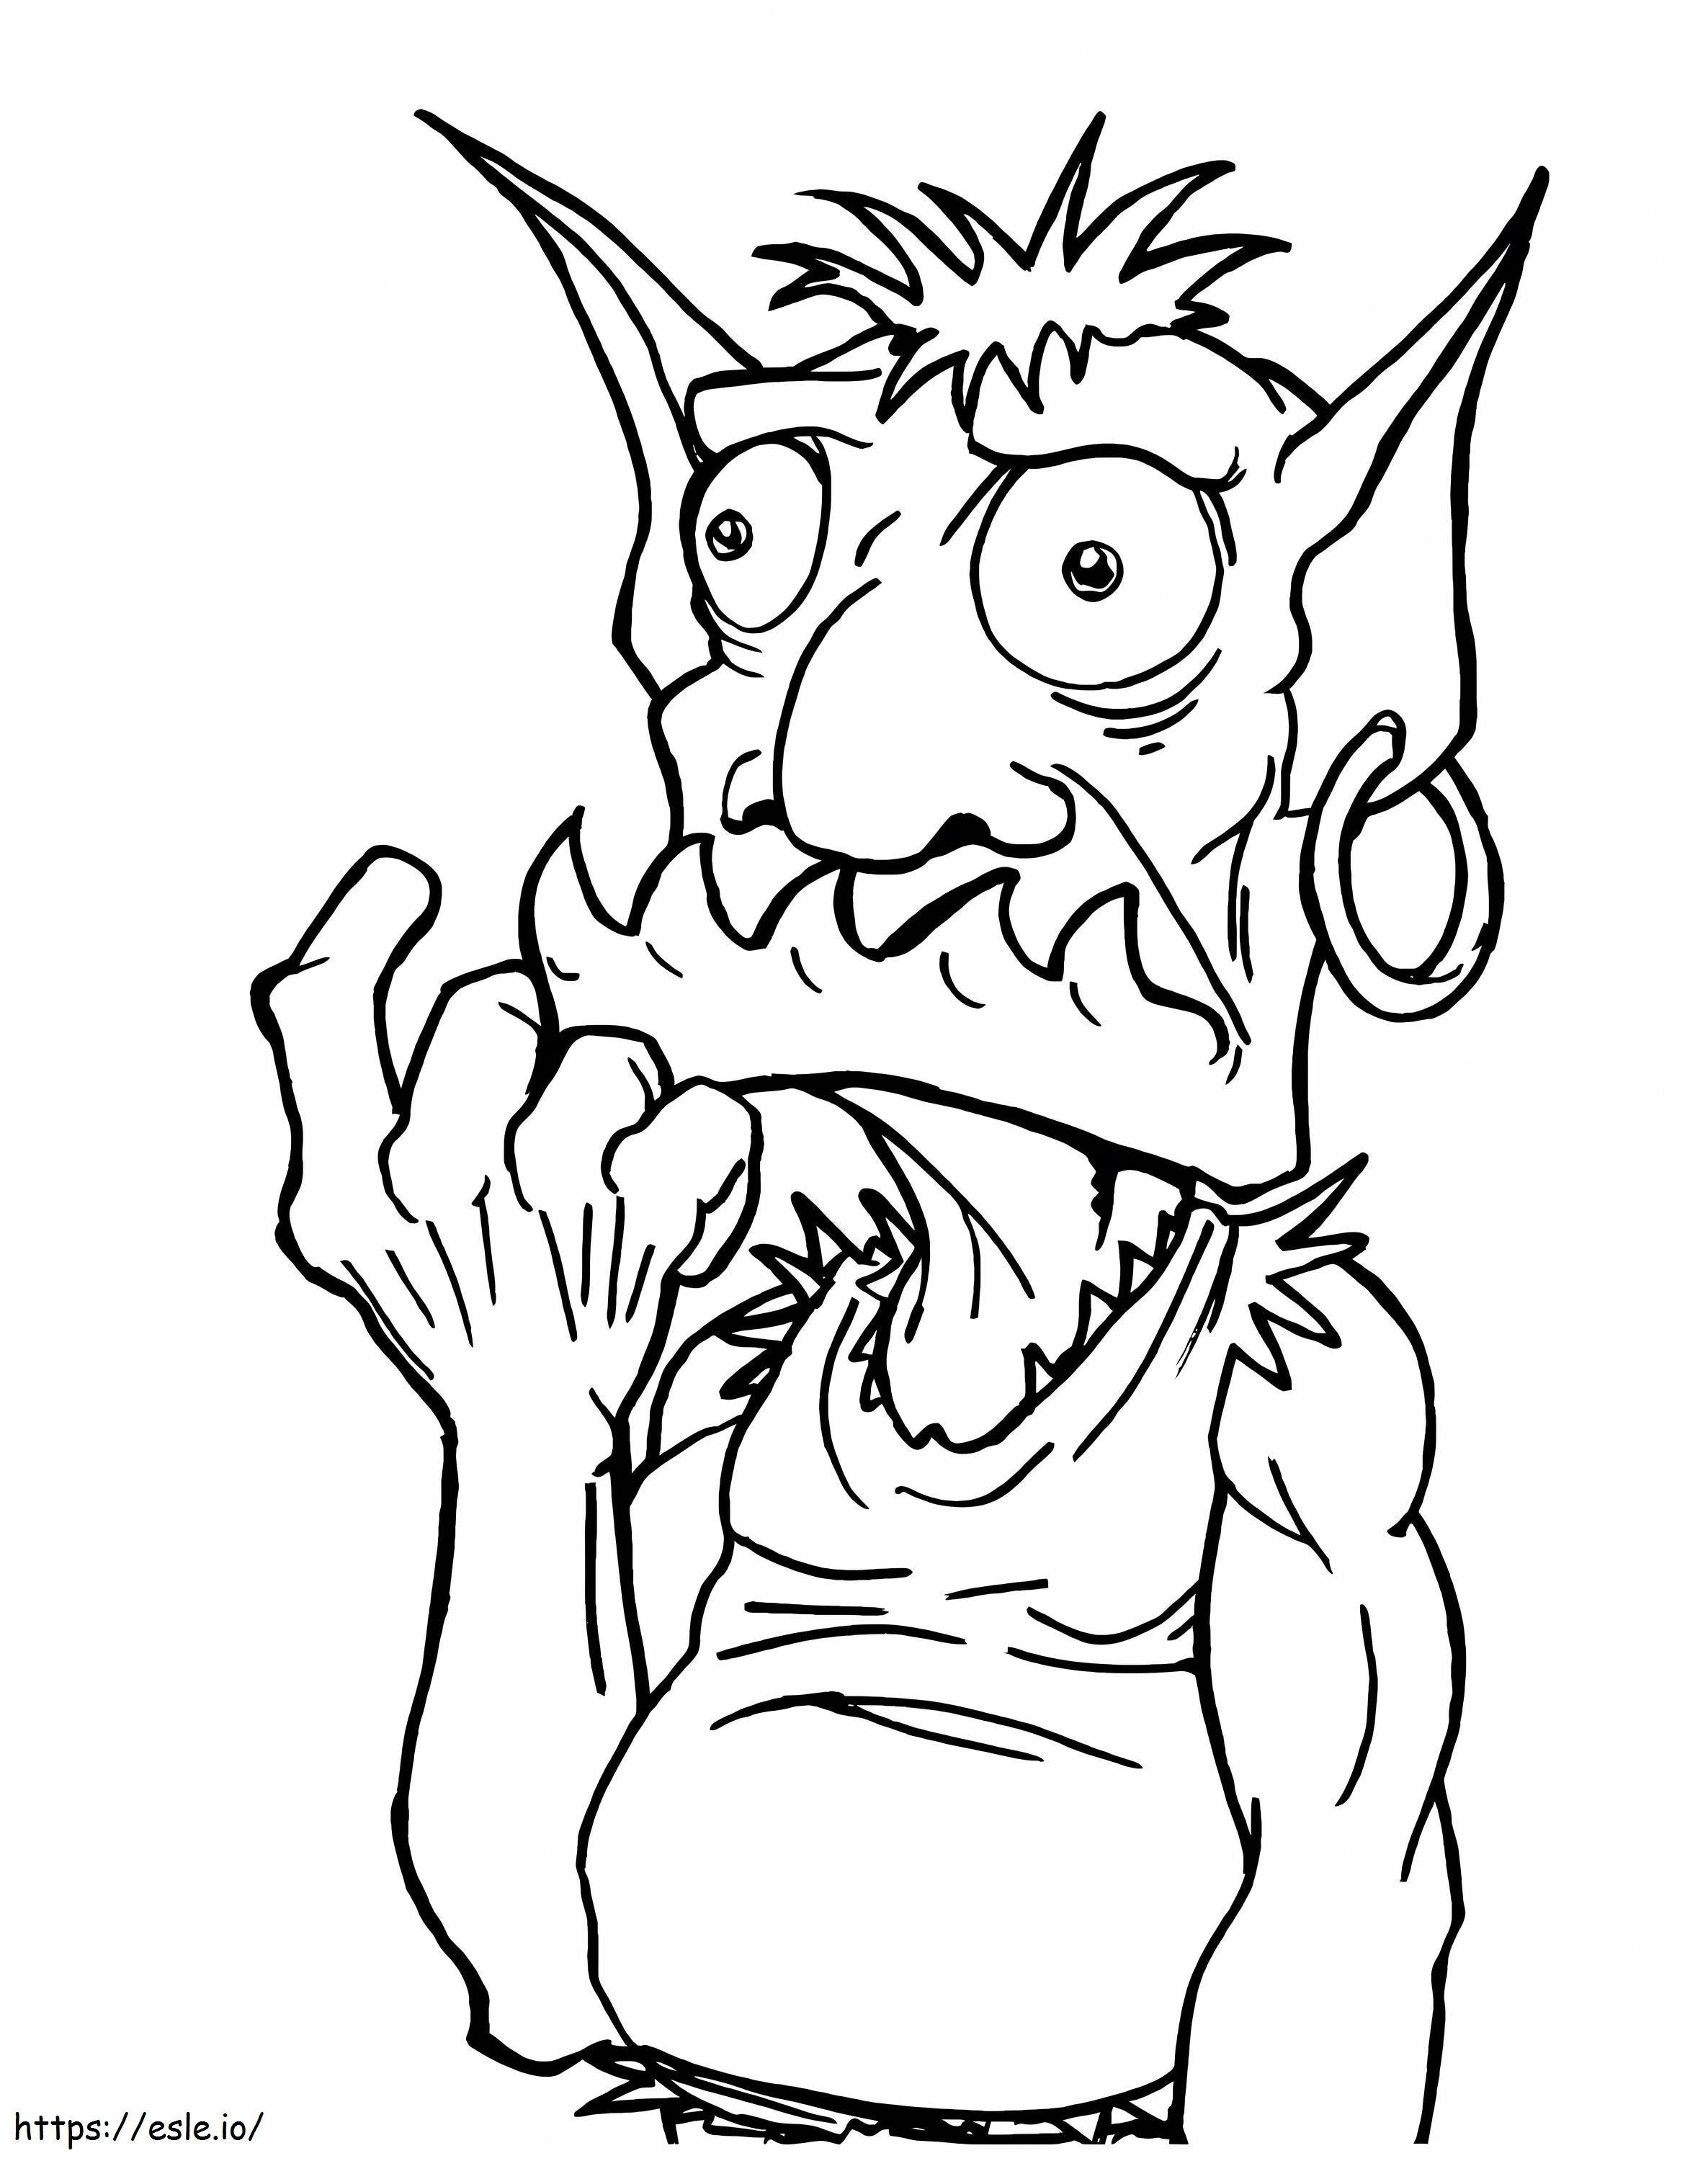 Goblin-Porträt ausmalbilder